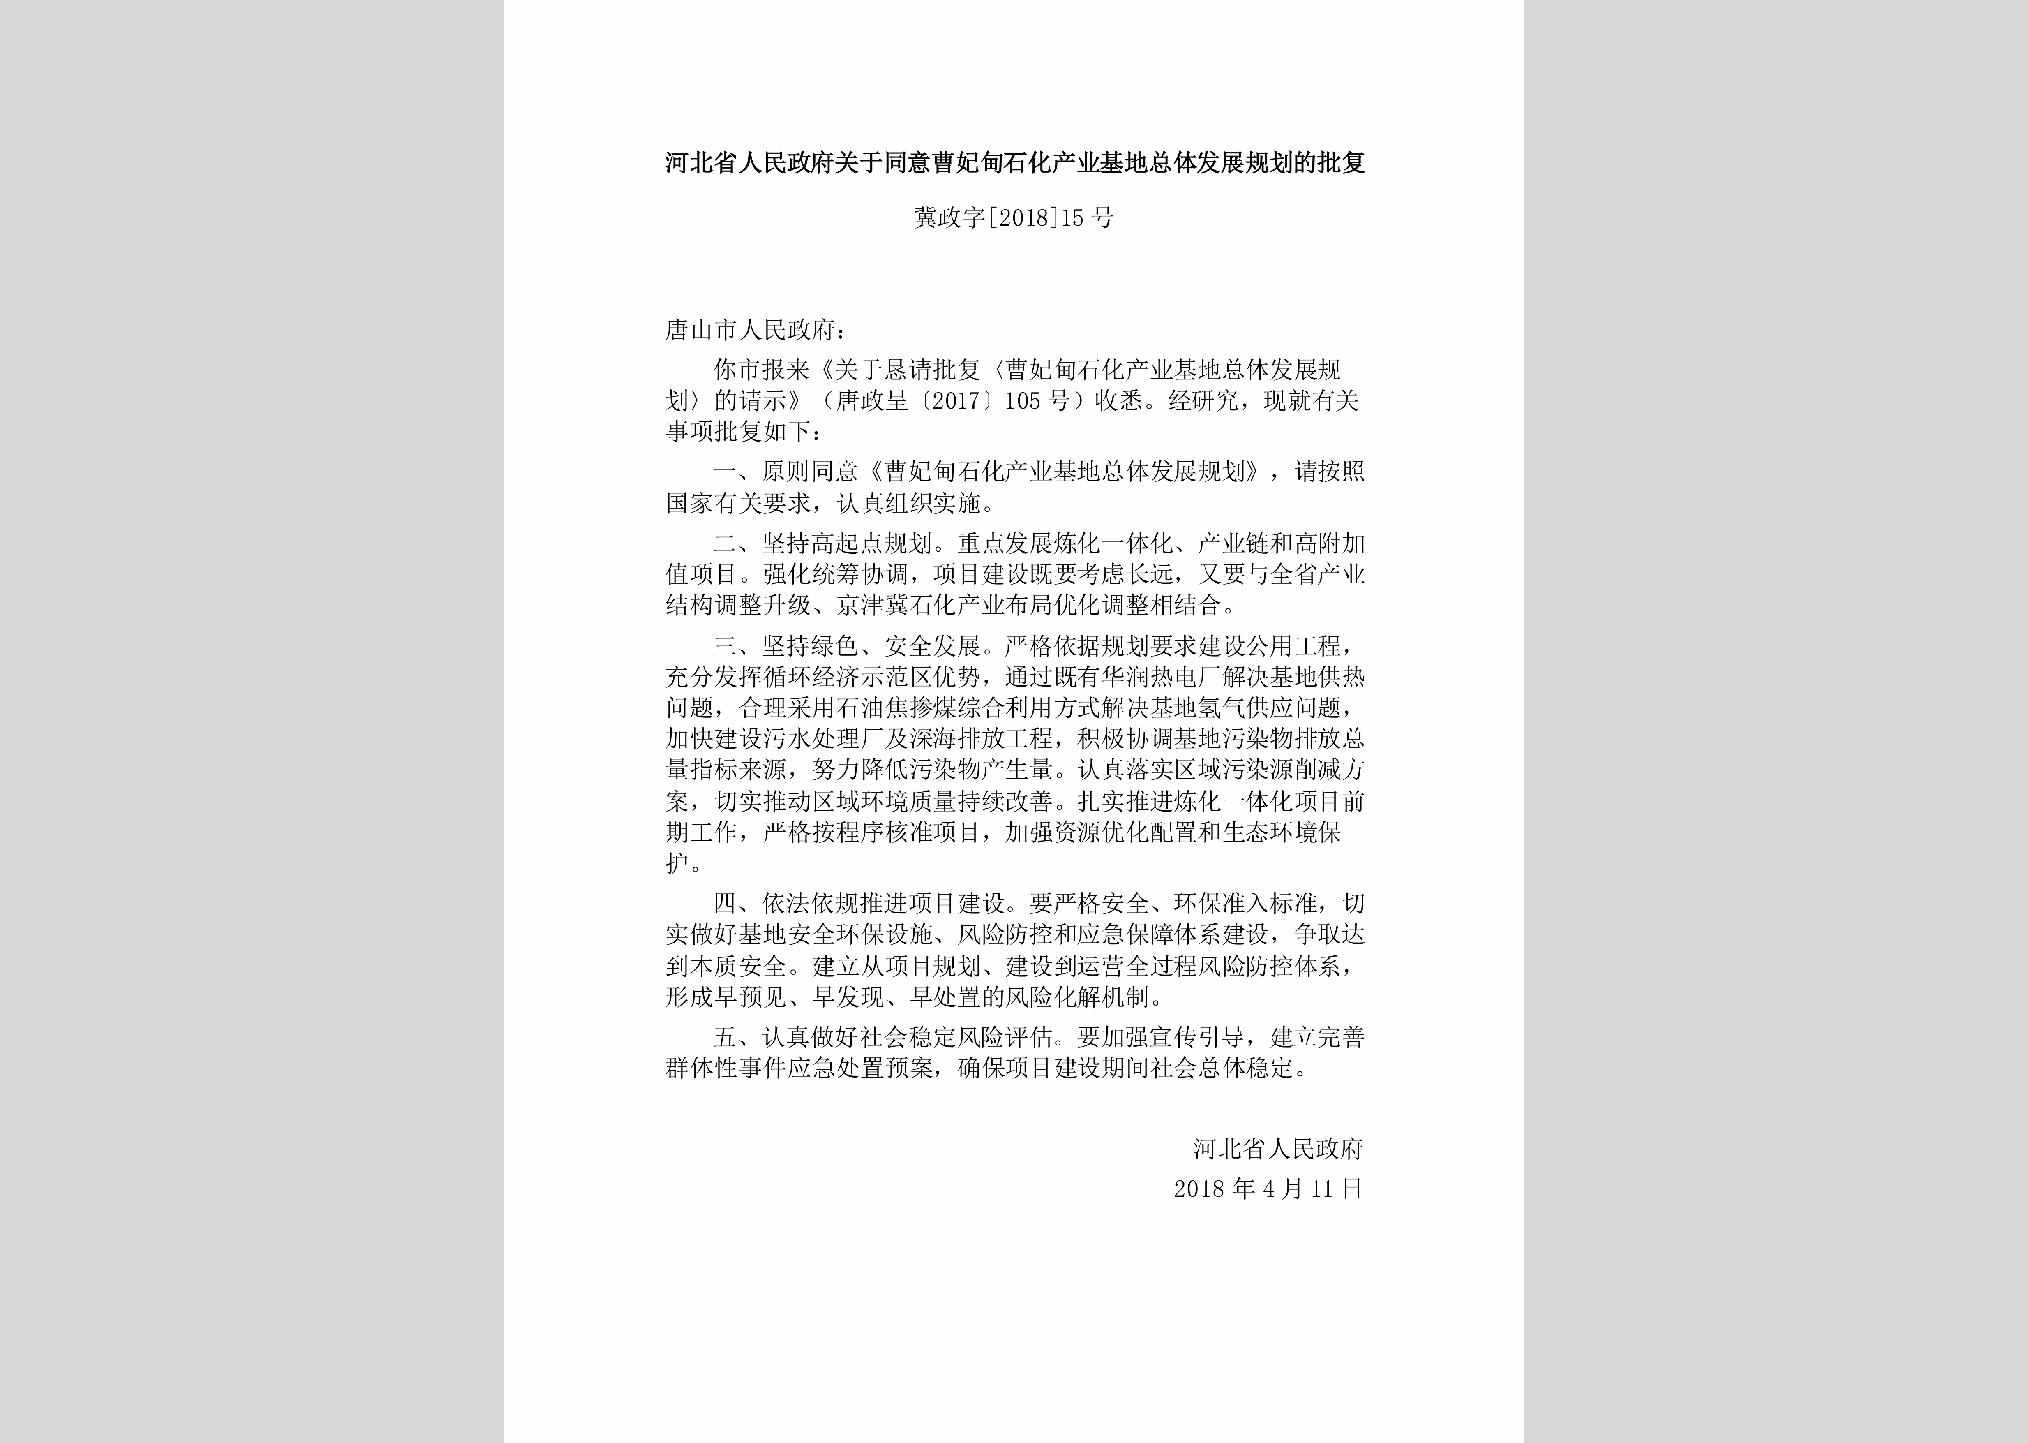 冀政字[2018]15号：河北省人民政府关于同意曹妃甸石化产业基地总体发展规划的批复